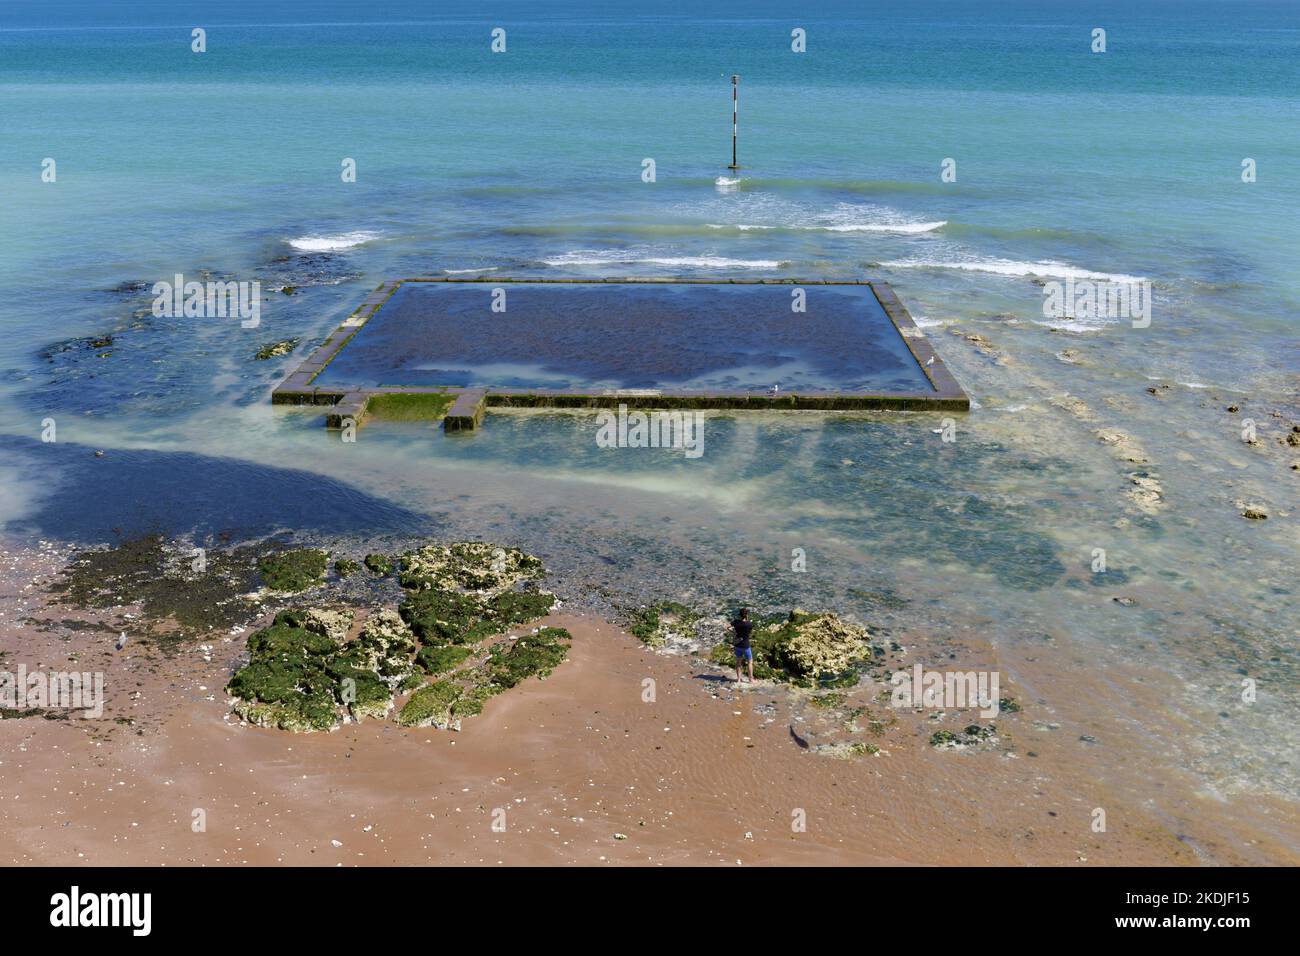 Viking Bay, piscine marémotrice pleine d'algues, Broadescaliers, Kent, Angleterre, Royaume-Uni Banque D'Images